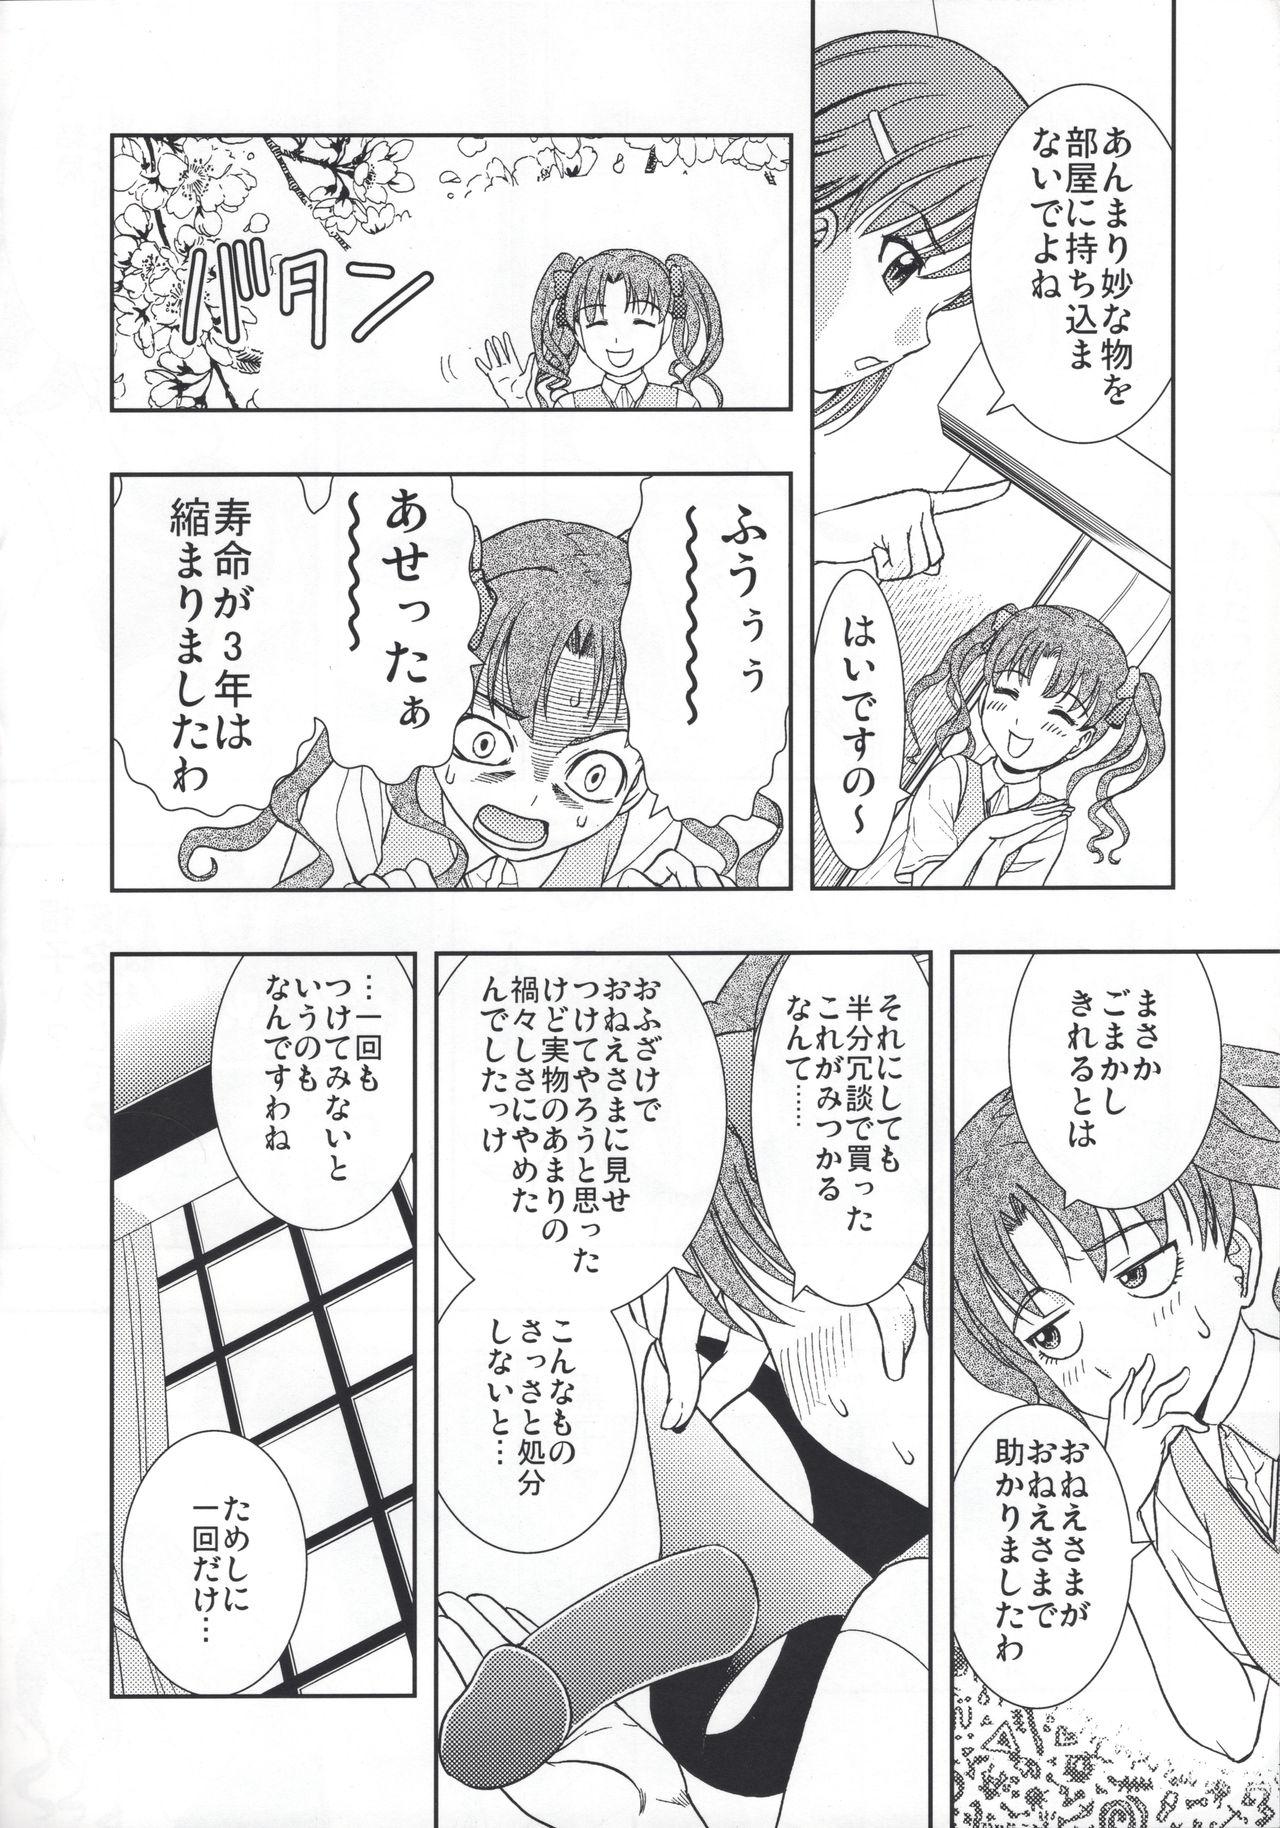 Penis Sucking Kuro・Misa - Toaru kagaku no railgun | a certain scientific railgun Mature Woman - Page 5